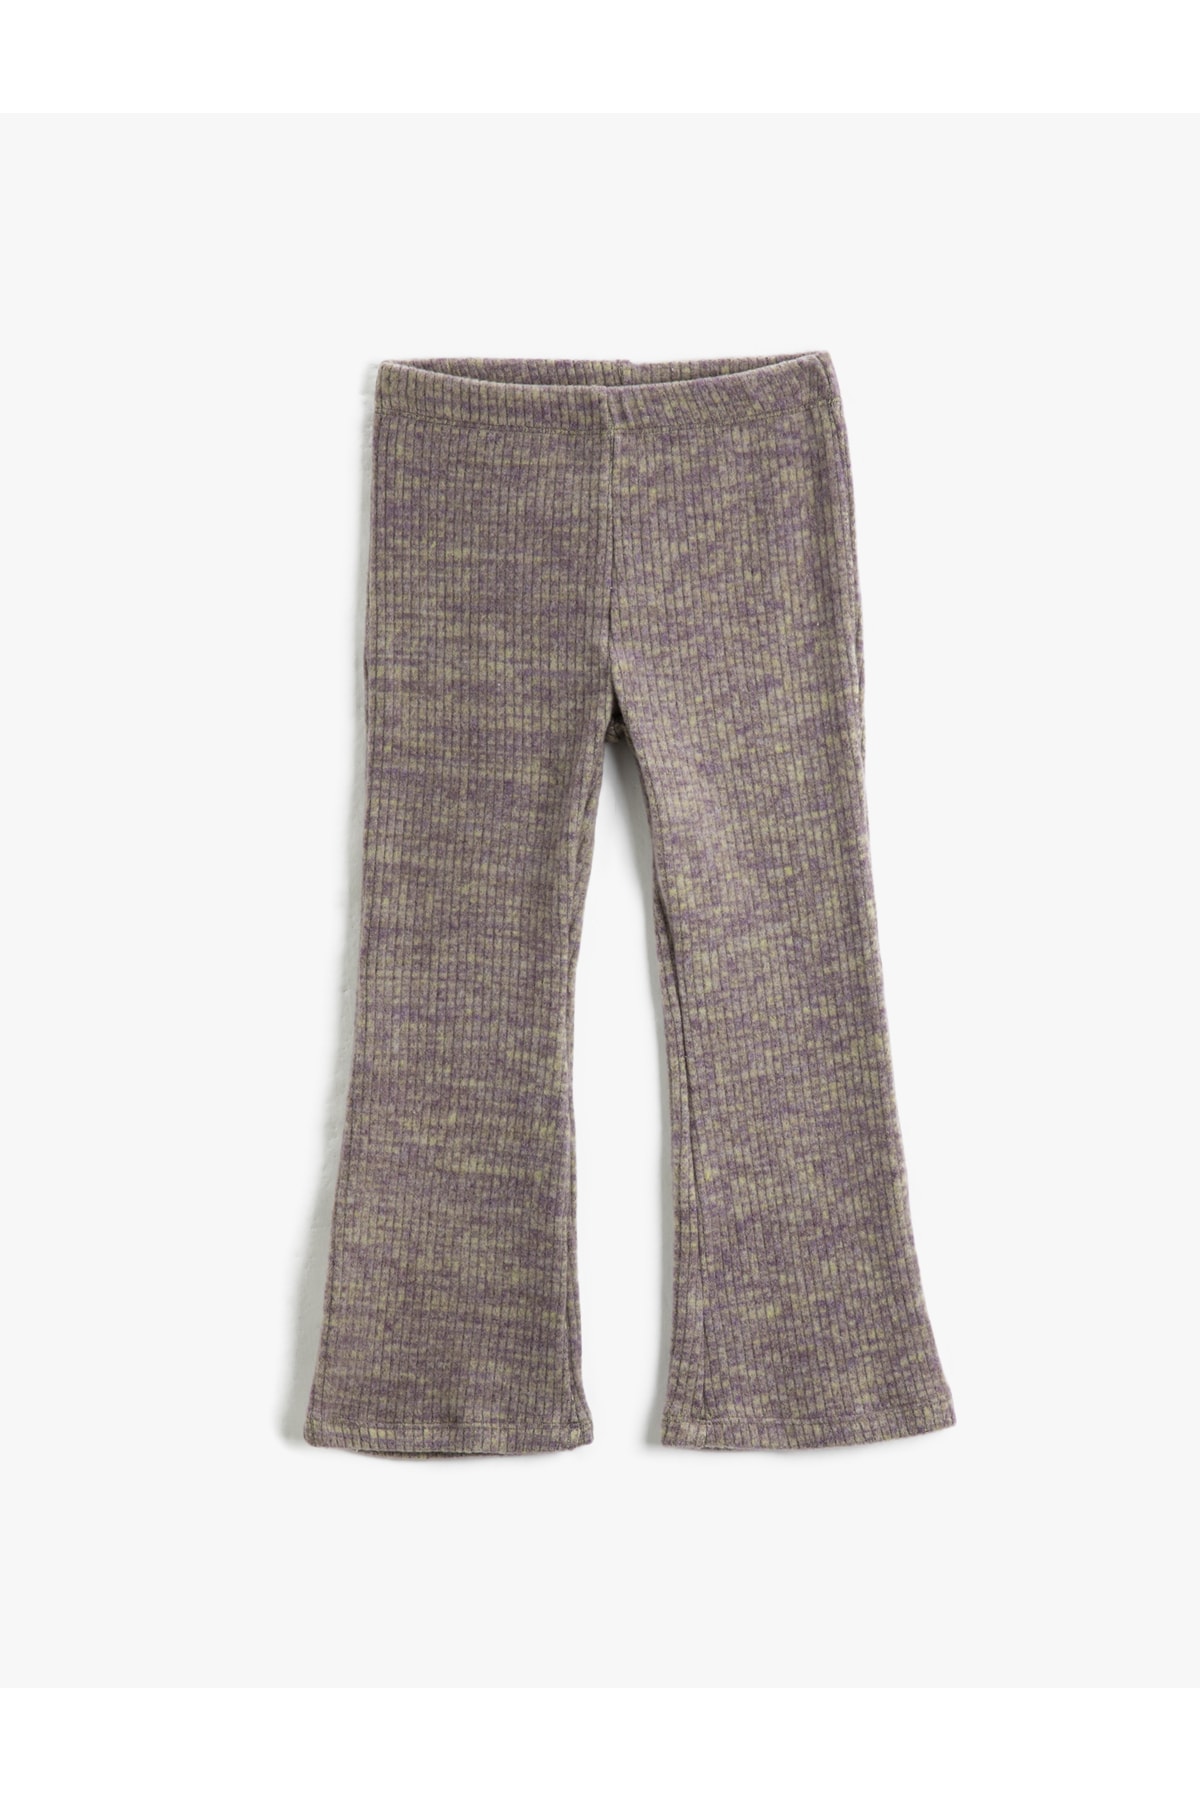 Levně Koton kalhoty s rozšířenými nohavicemi, volný střih, měkká textura